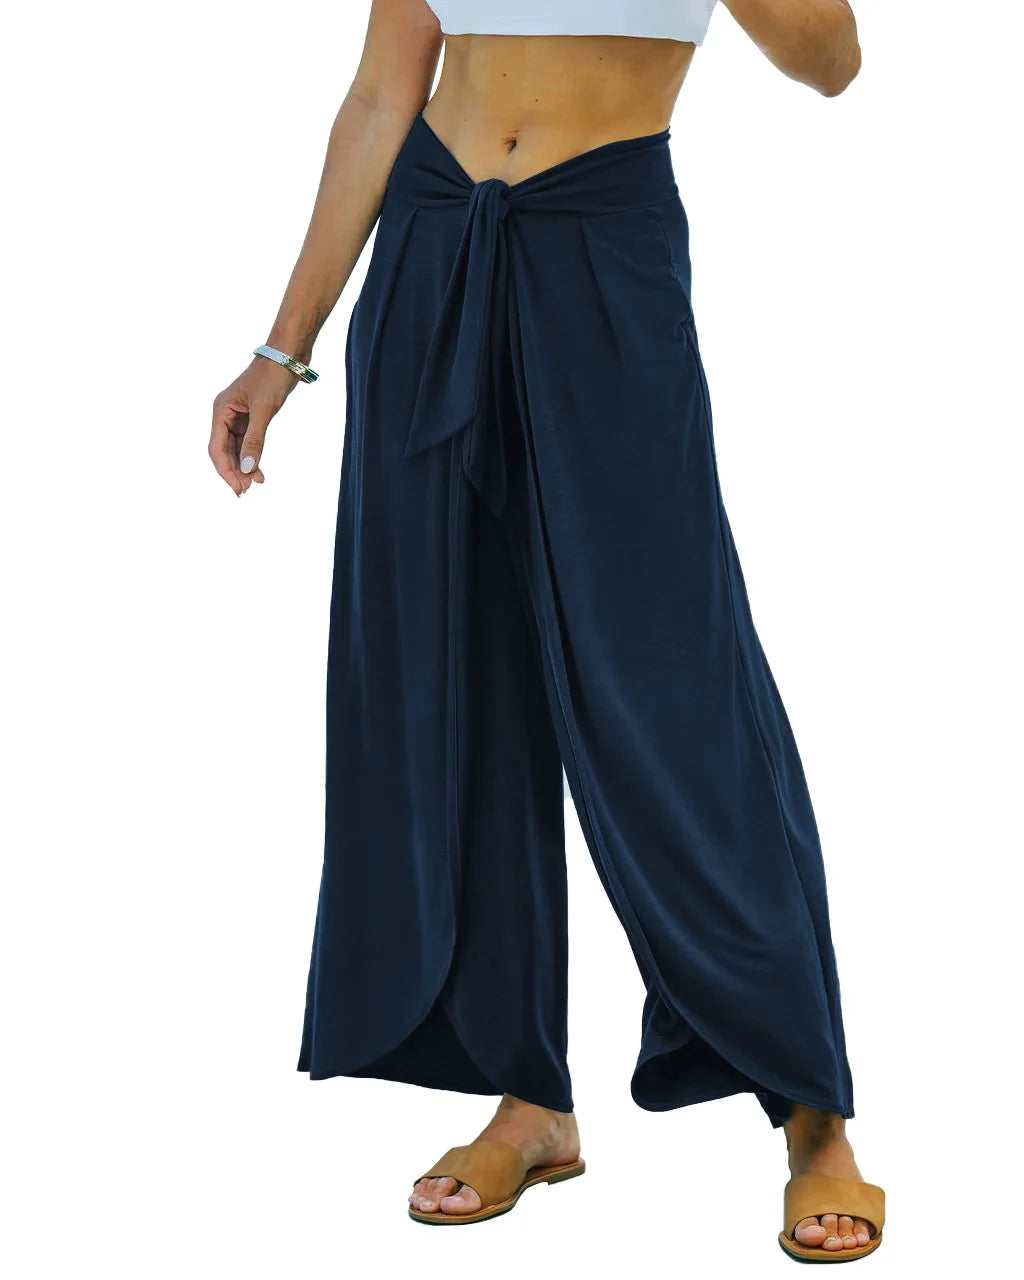 Pantalón ancho azul marino con lazo en la cintura de mujer